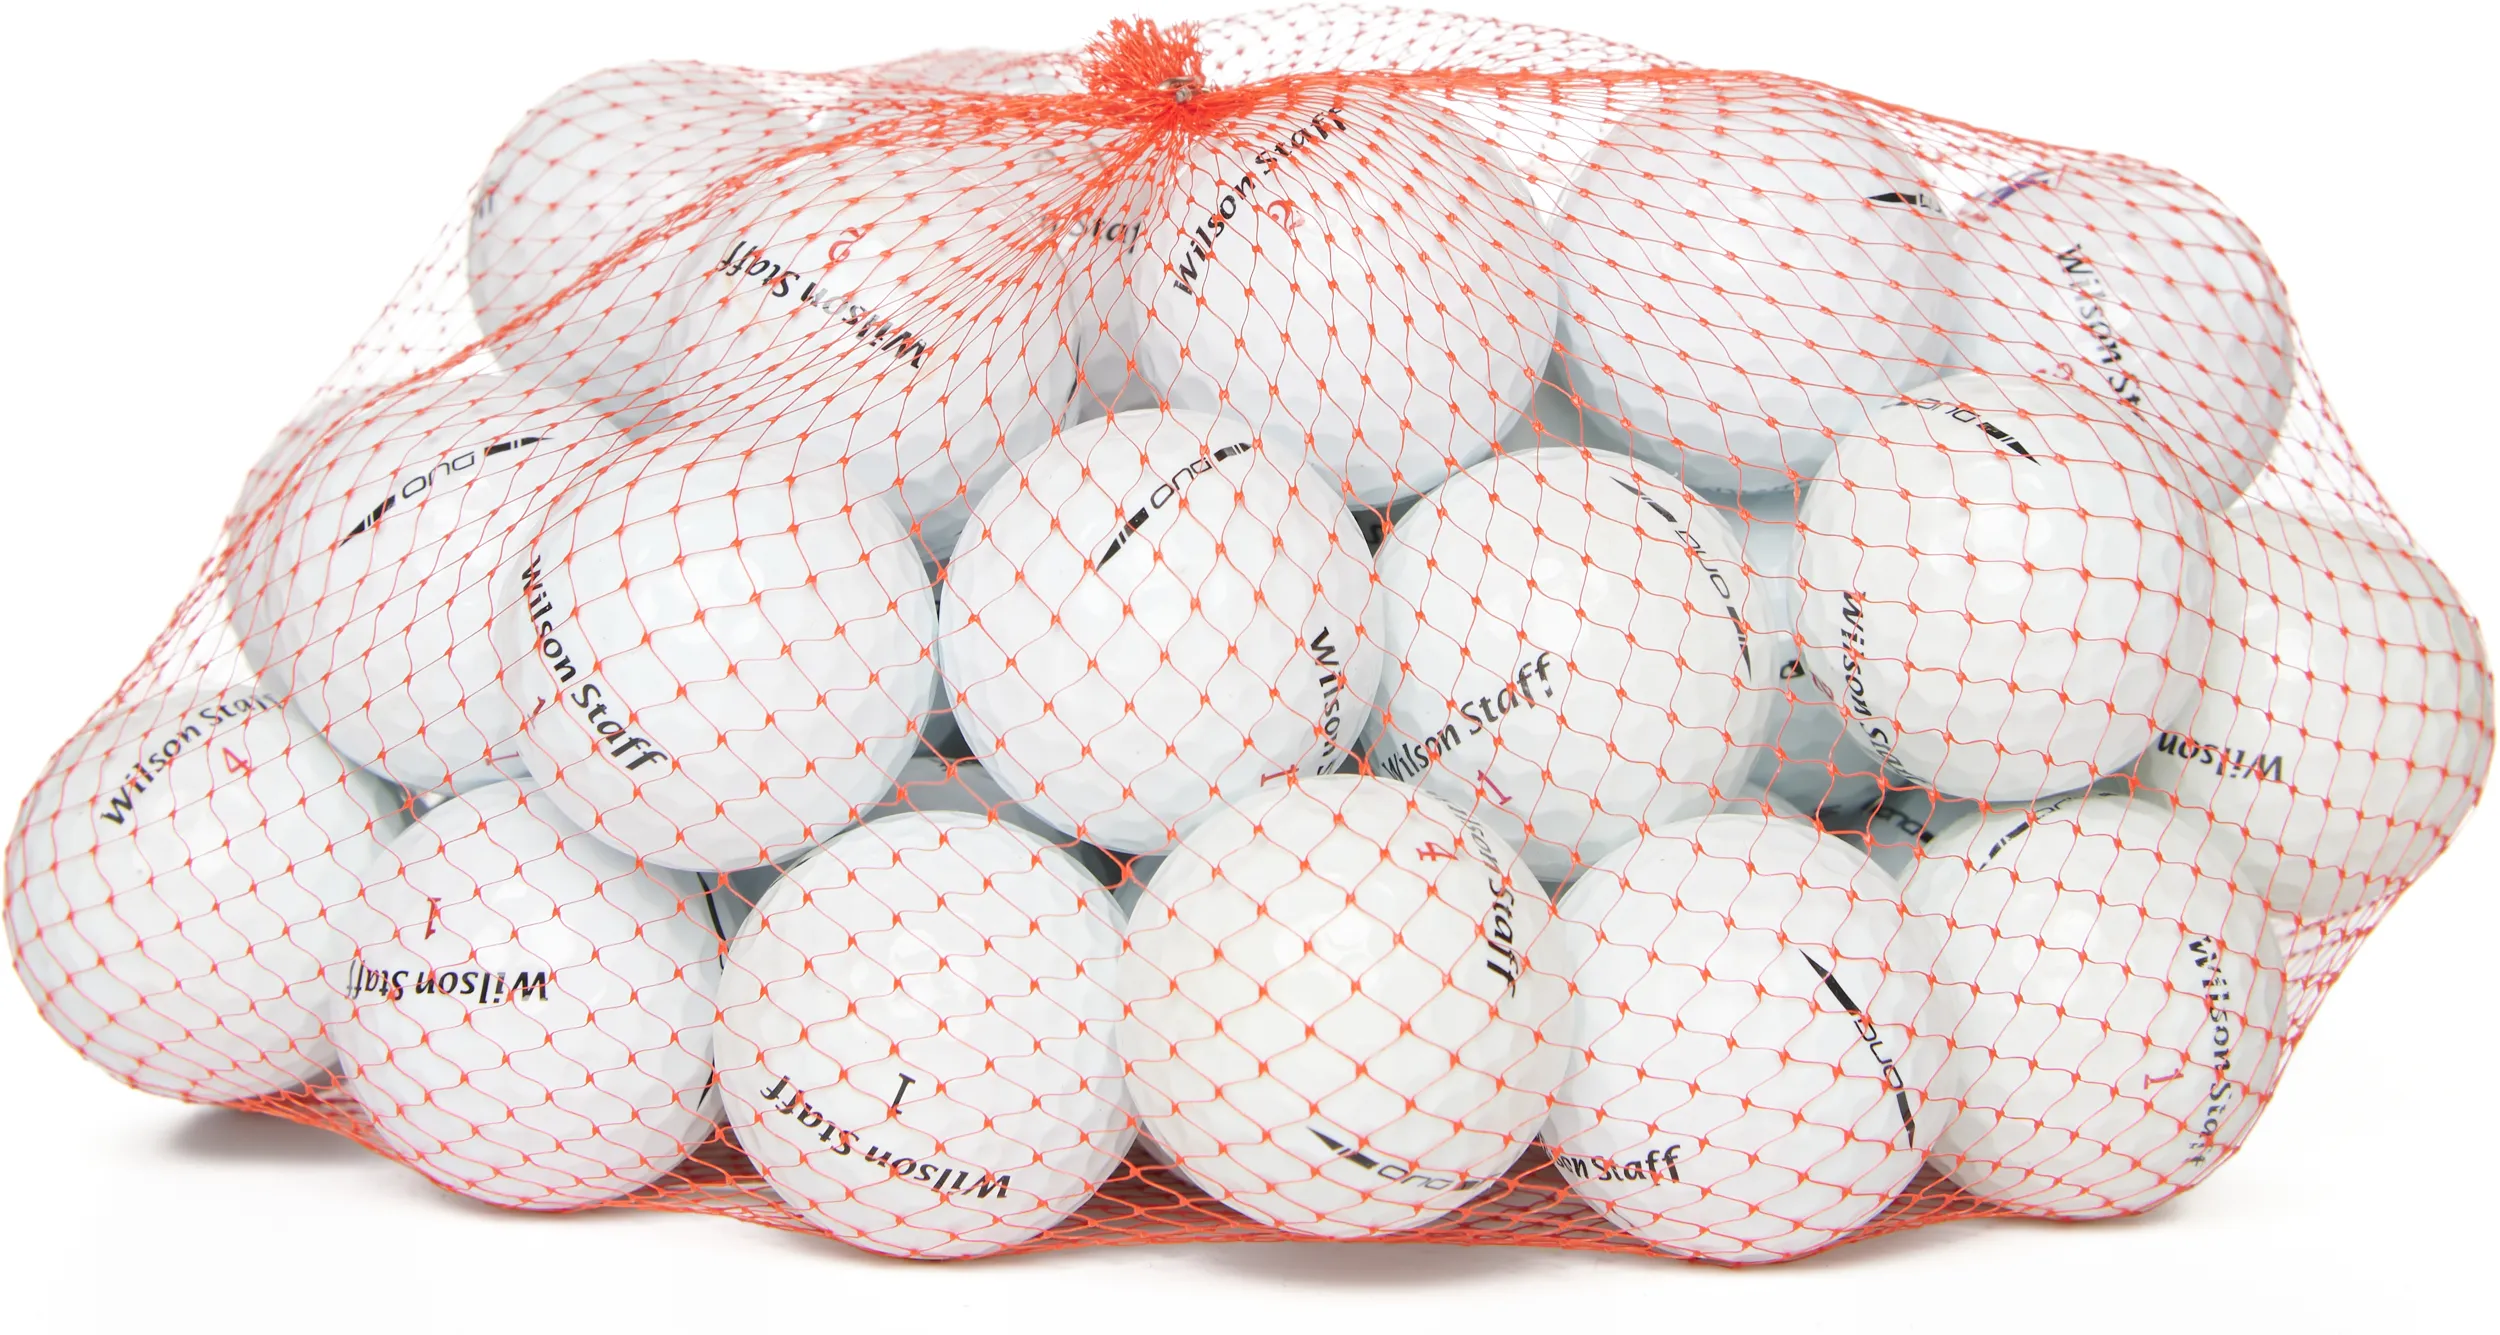 50 Wilson DUO Lakeballs, white